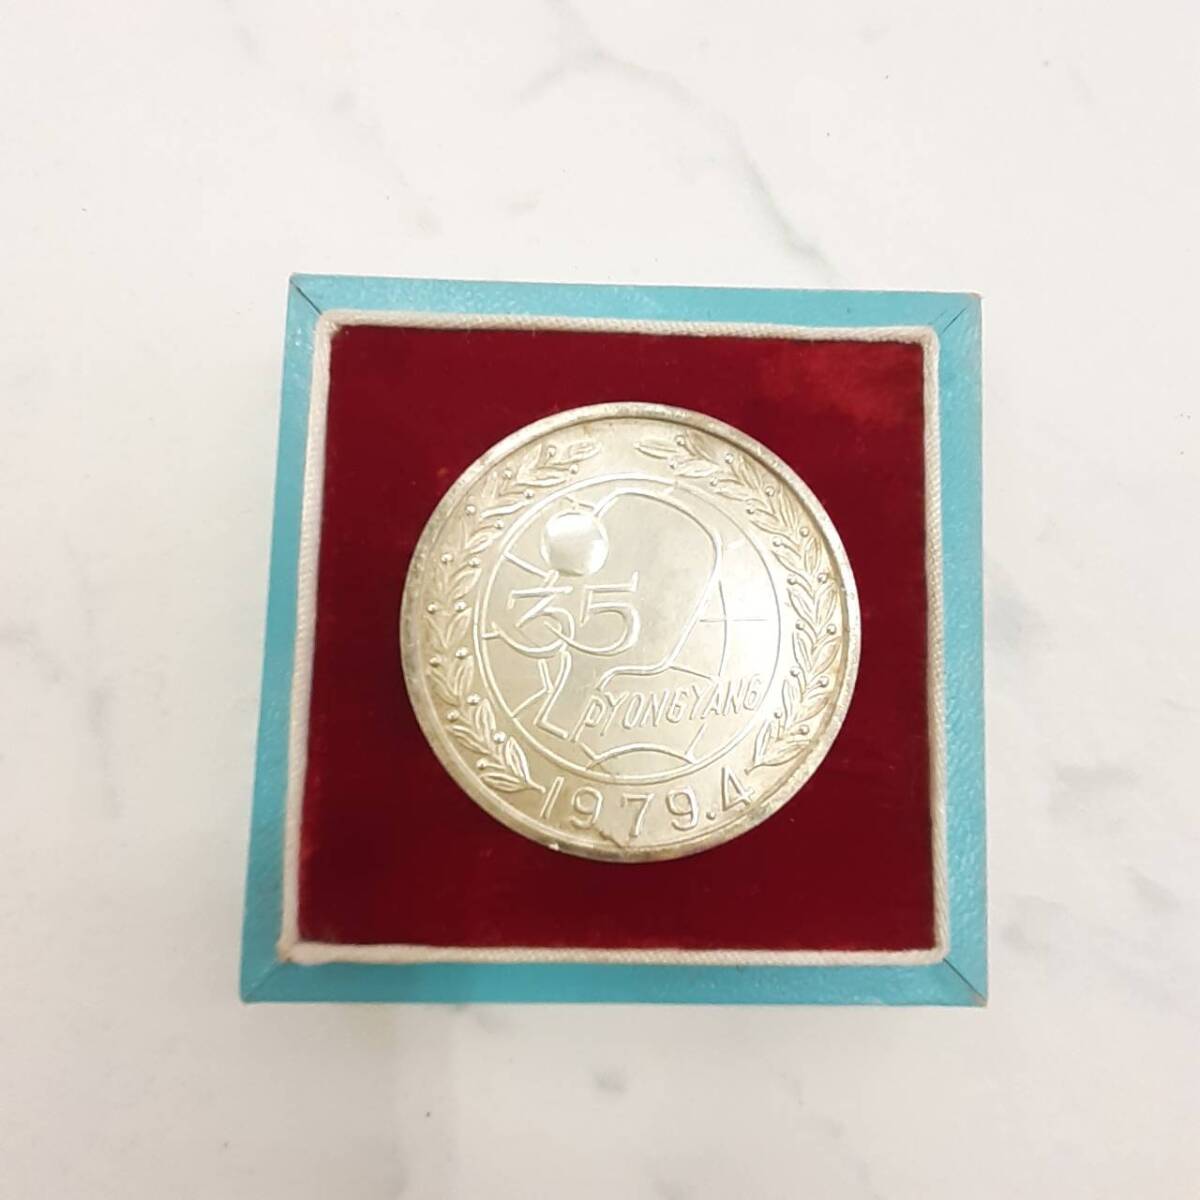 【中古】創立20周年記念メダル 1979 千葉朝鮮信用組合 銀貨 SV シルバー 99.6g_画像1